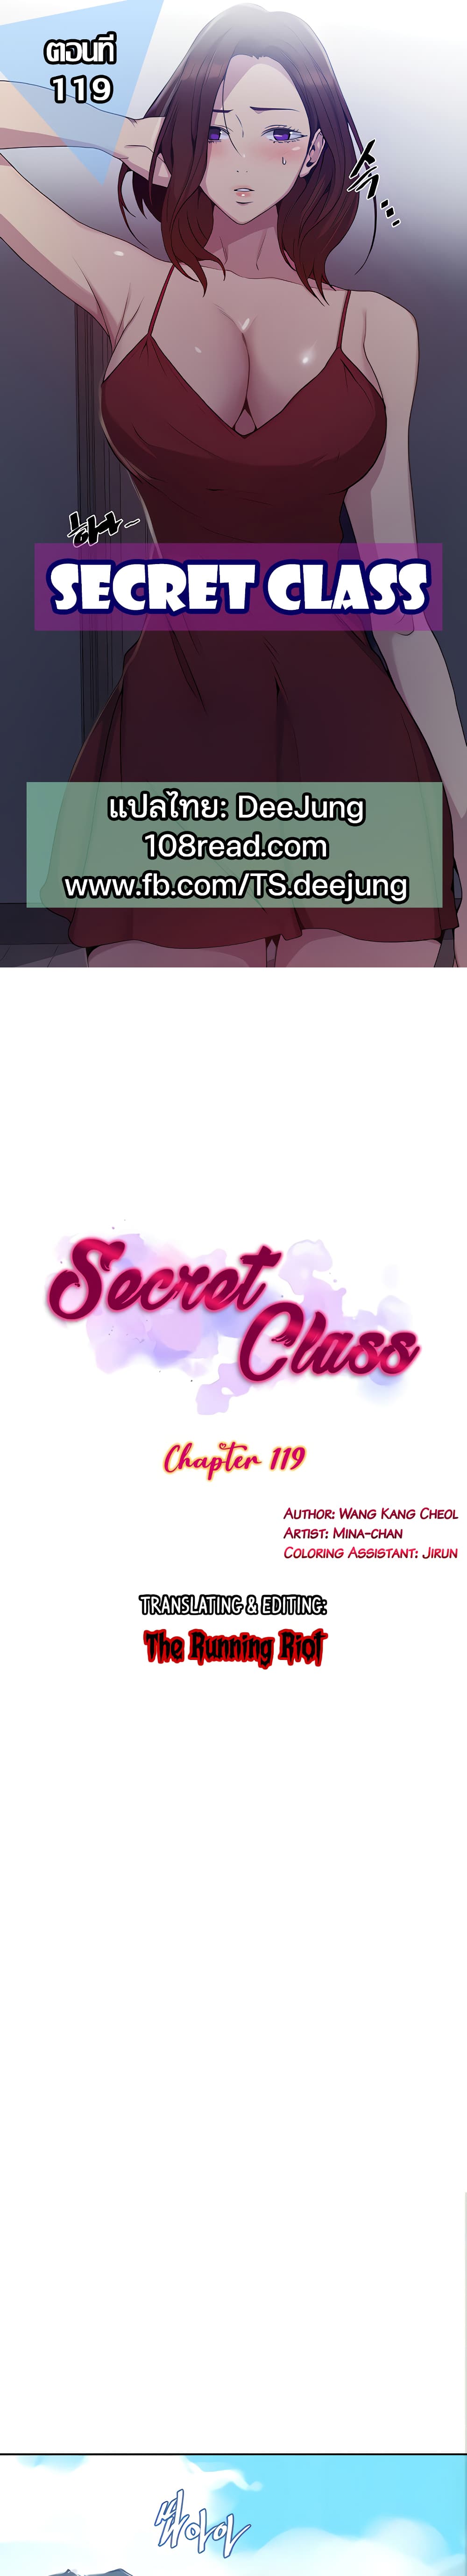 Secret Class 119 01